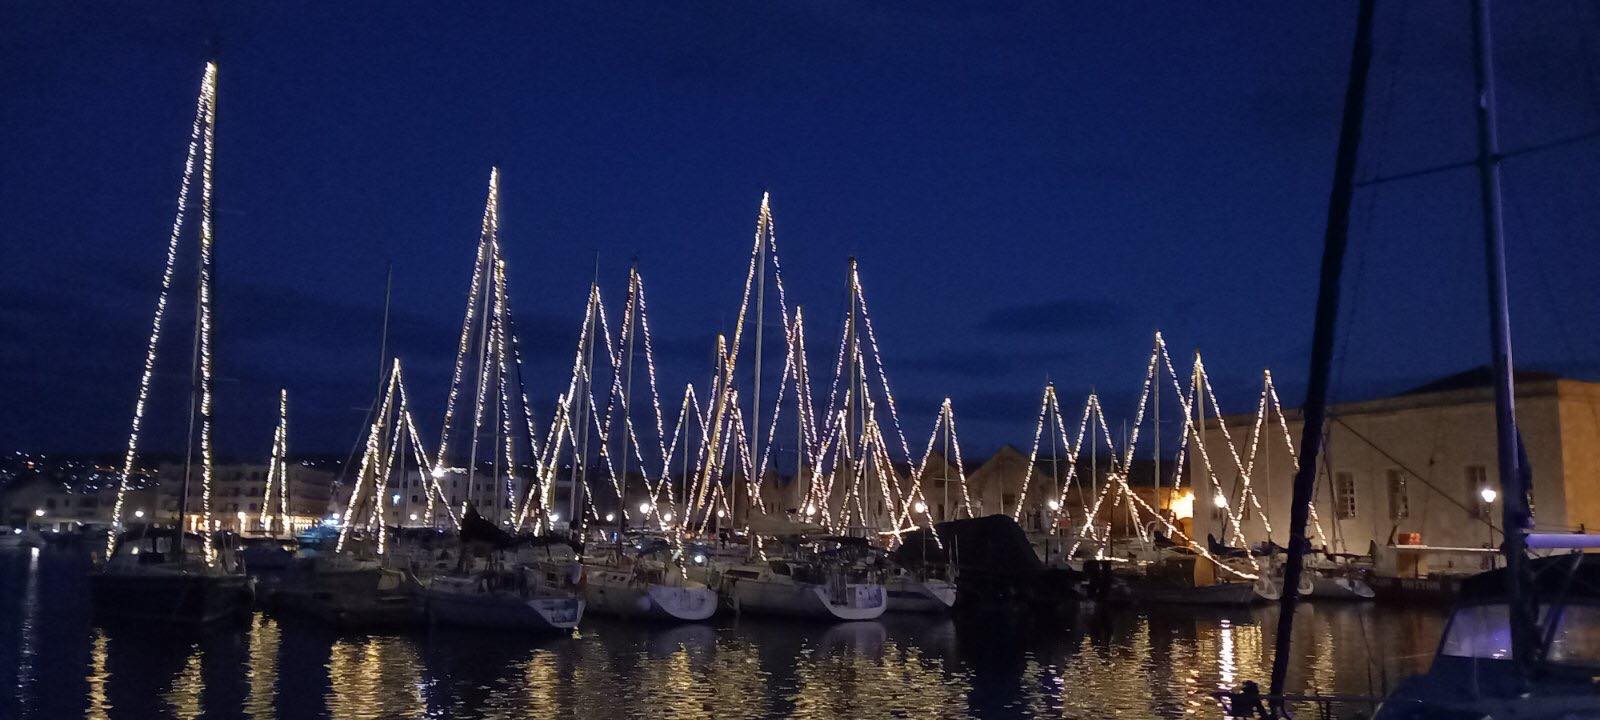 Χανιά: Ότι πιο όμορφο έχουμε δει σε Χριστουγεννιάτικο στολισμό στο Ενετικό Λιμάνι (φωτο) - aera.gr